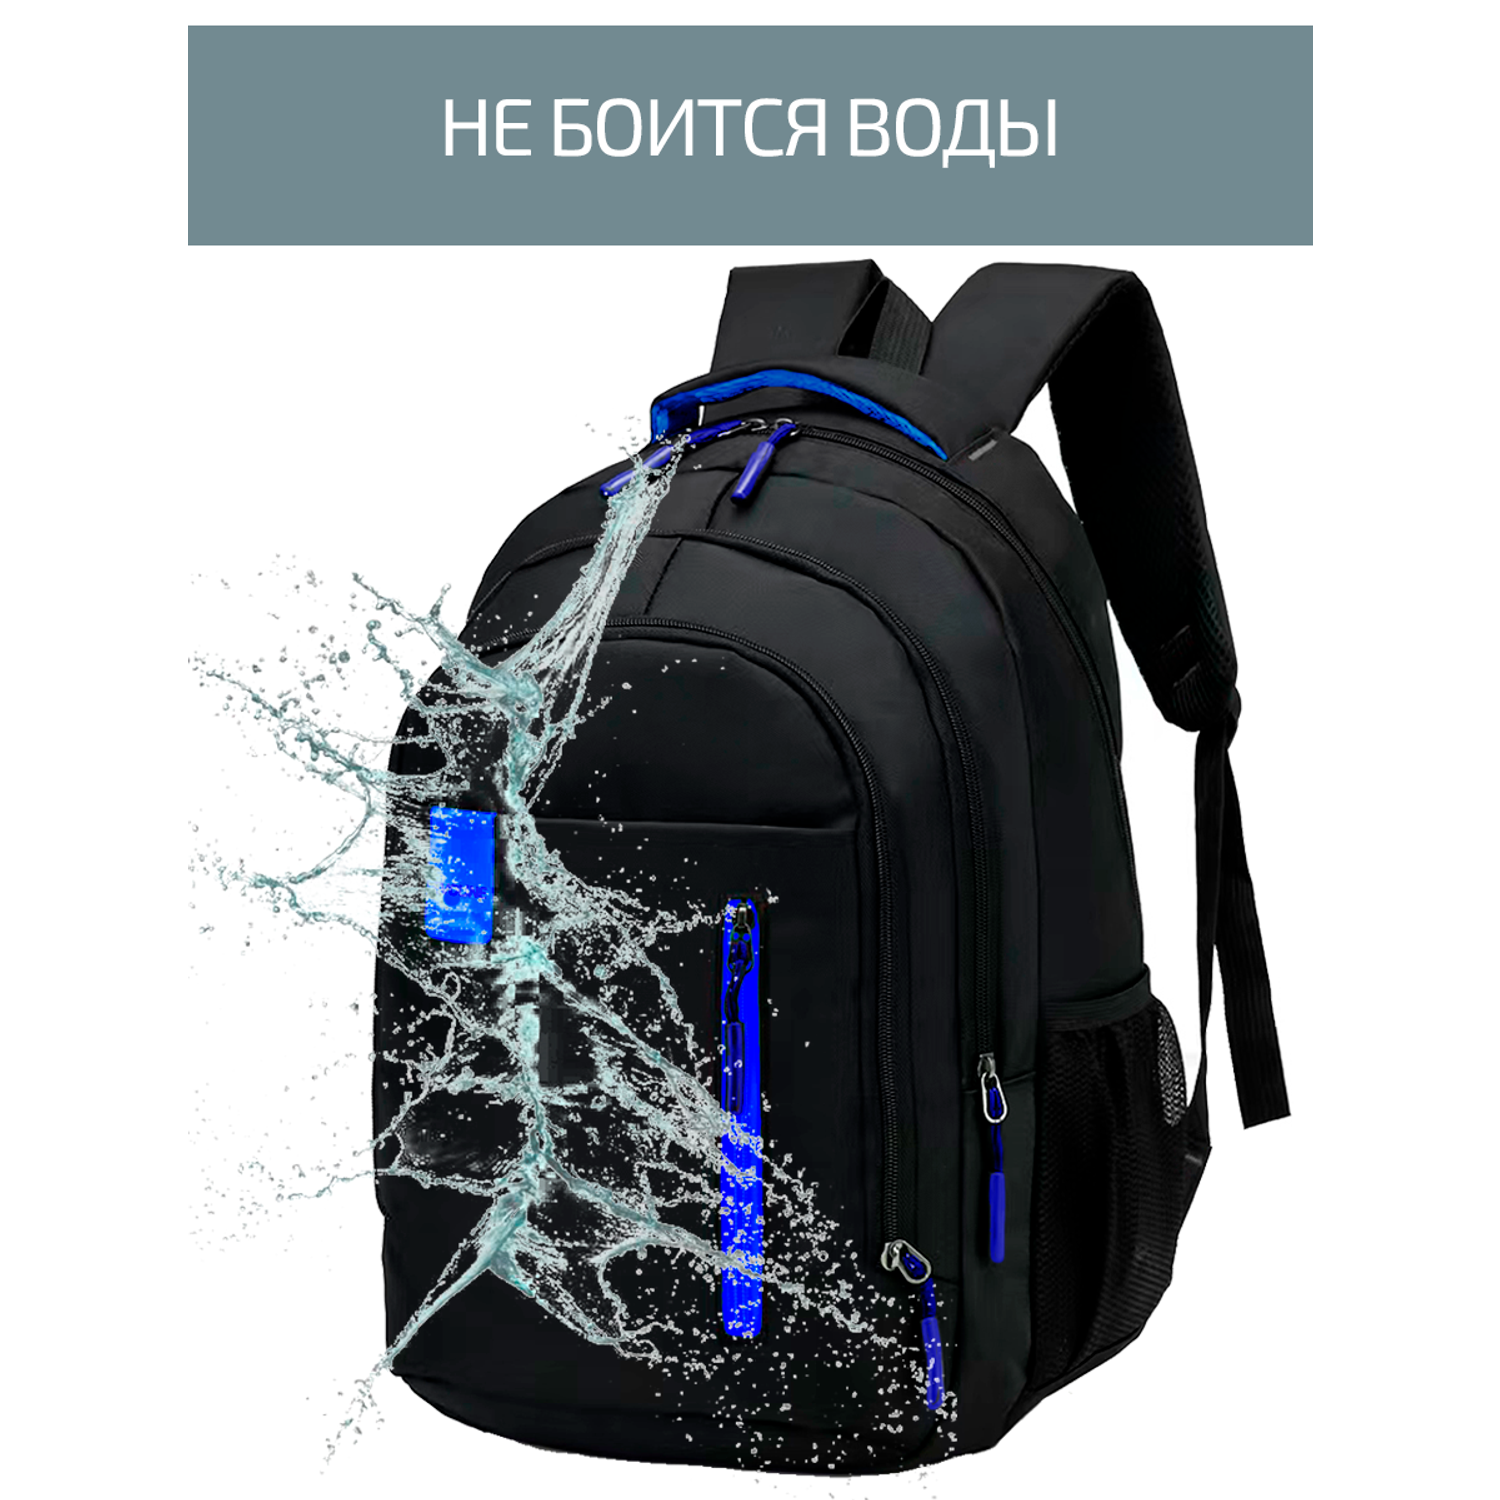 Рюкзак школьный Evoline Черный синий EVO-330-41 - фото 7